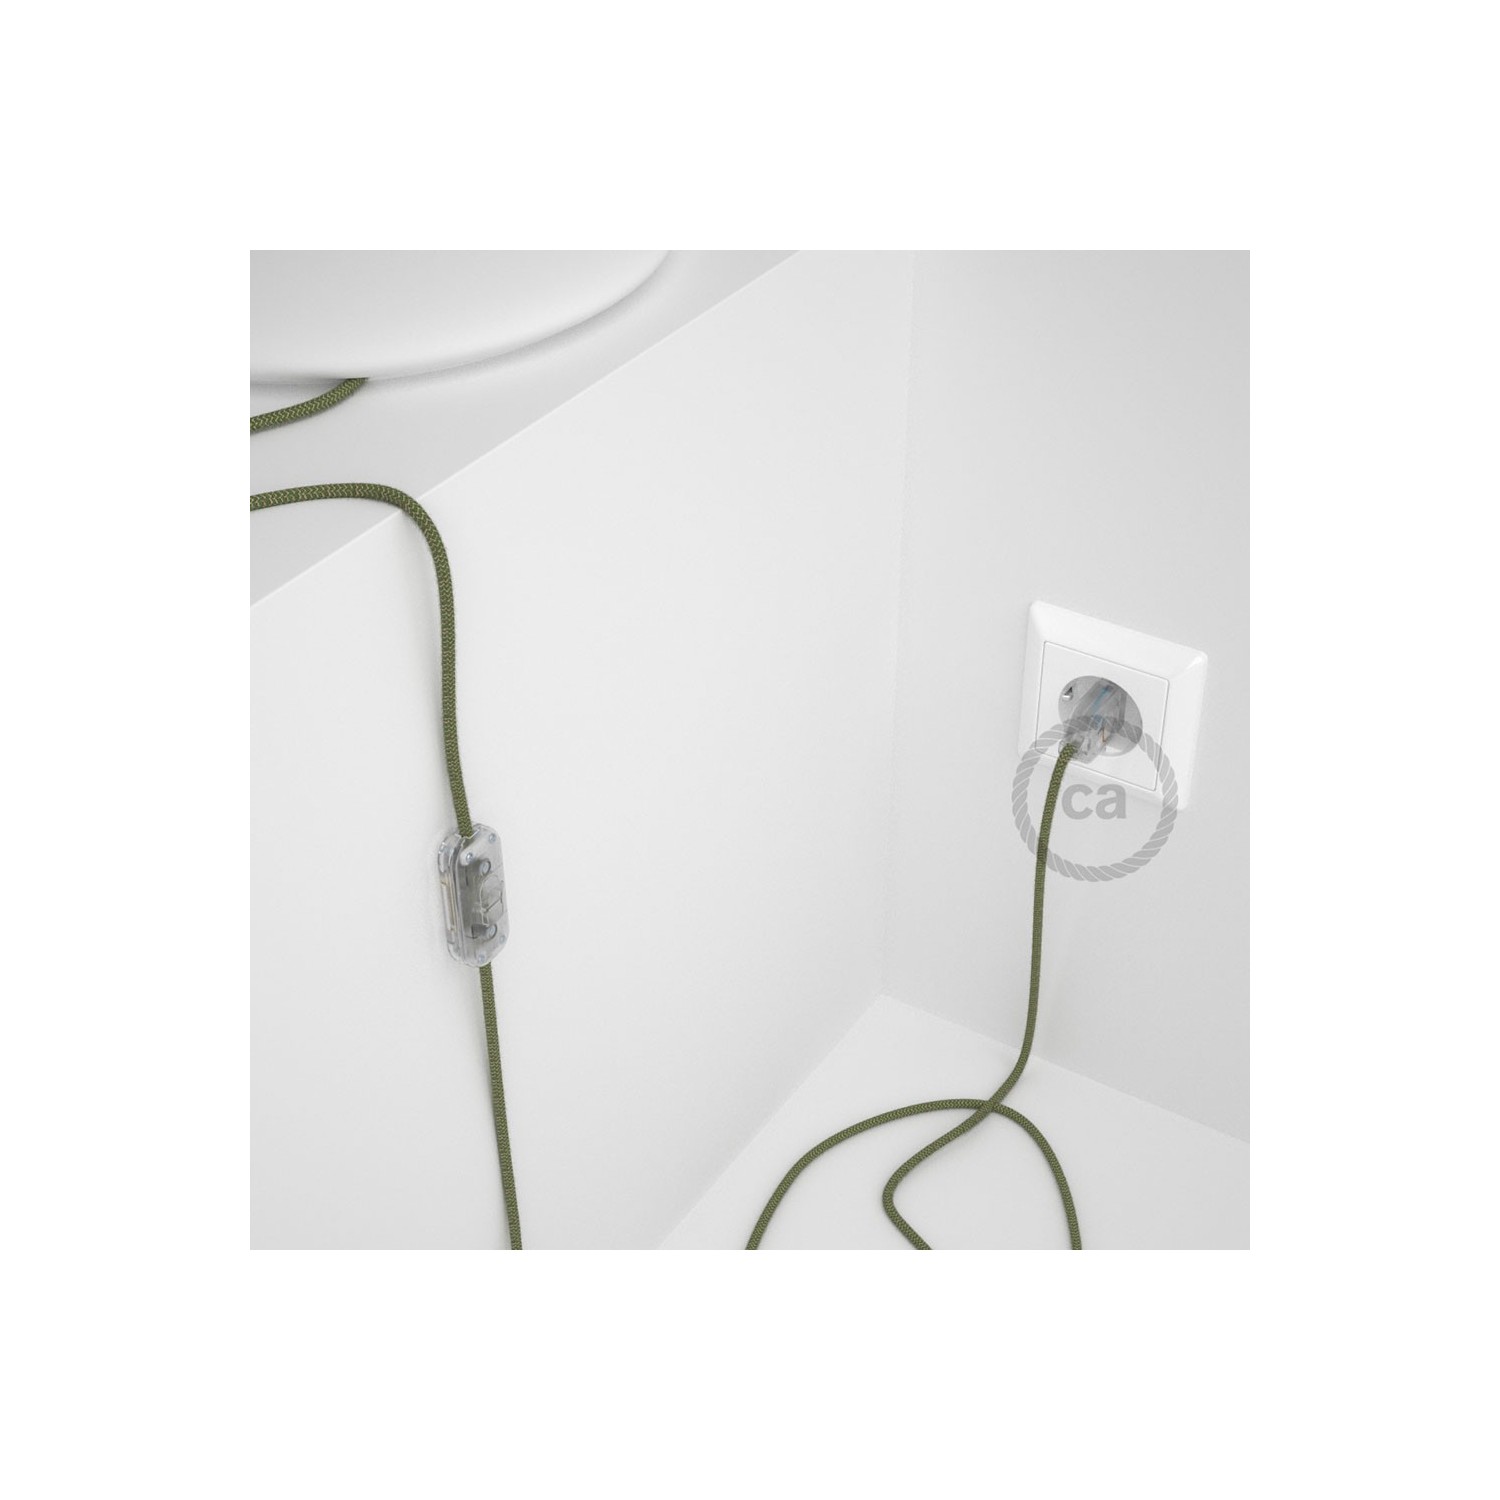 Cordon pour lampe, câble RD72 ZigZag Vert Thym 1,80 m. Choisissez la couleur de la fiche et de l'interrupteur!